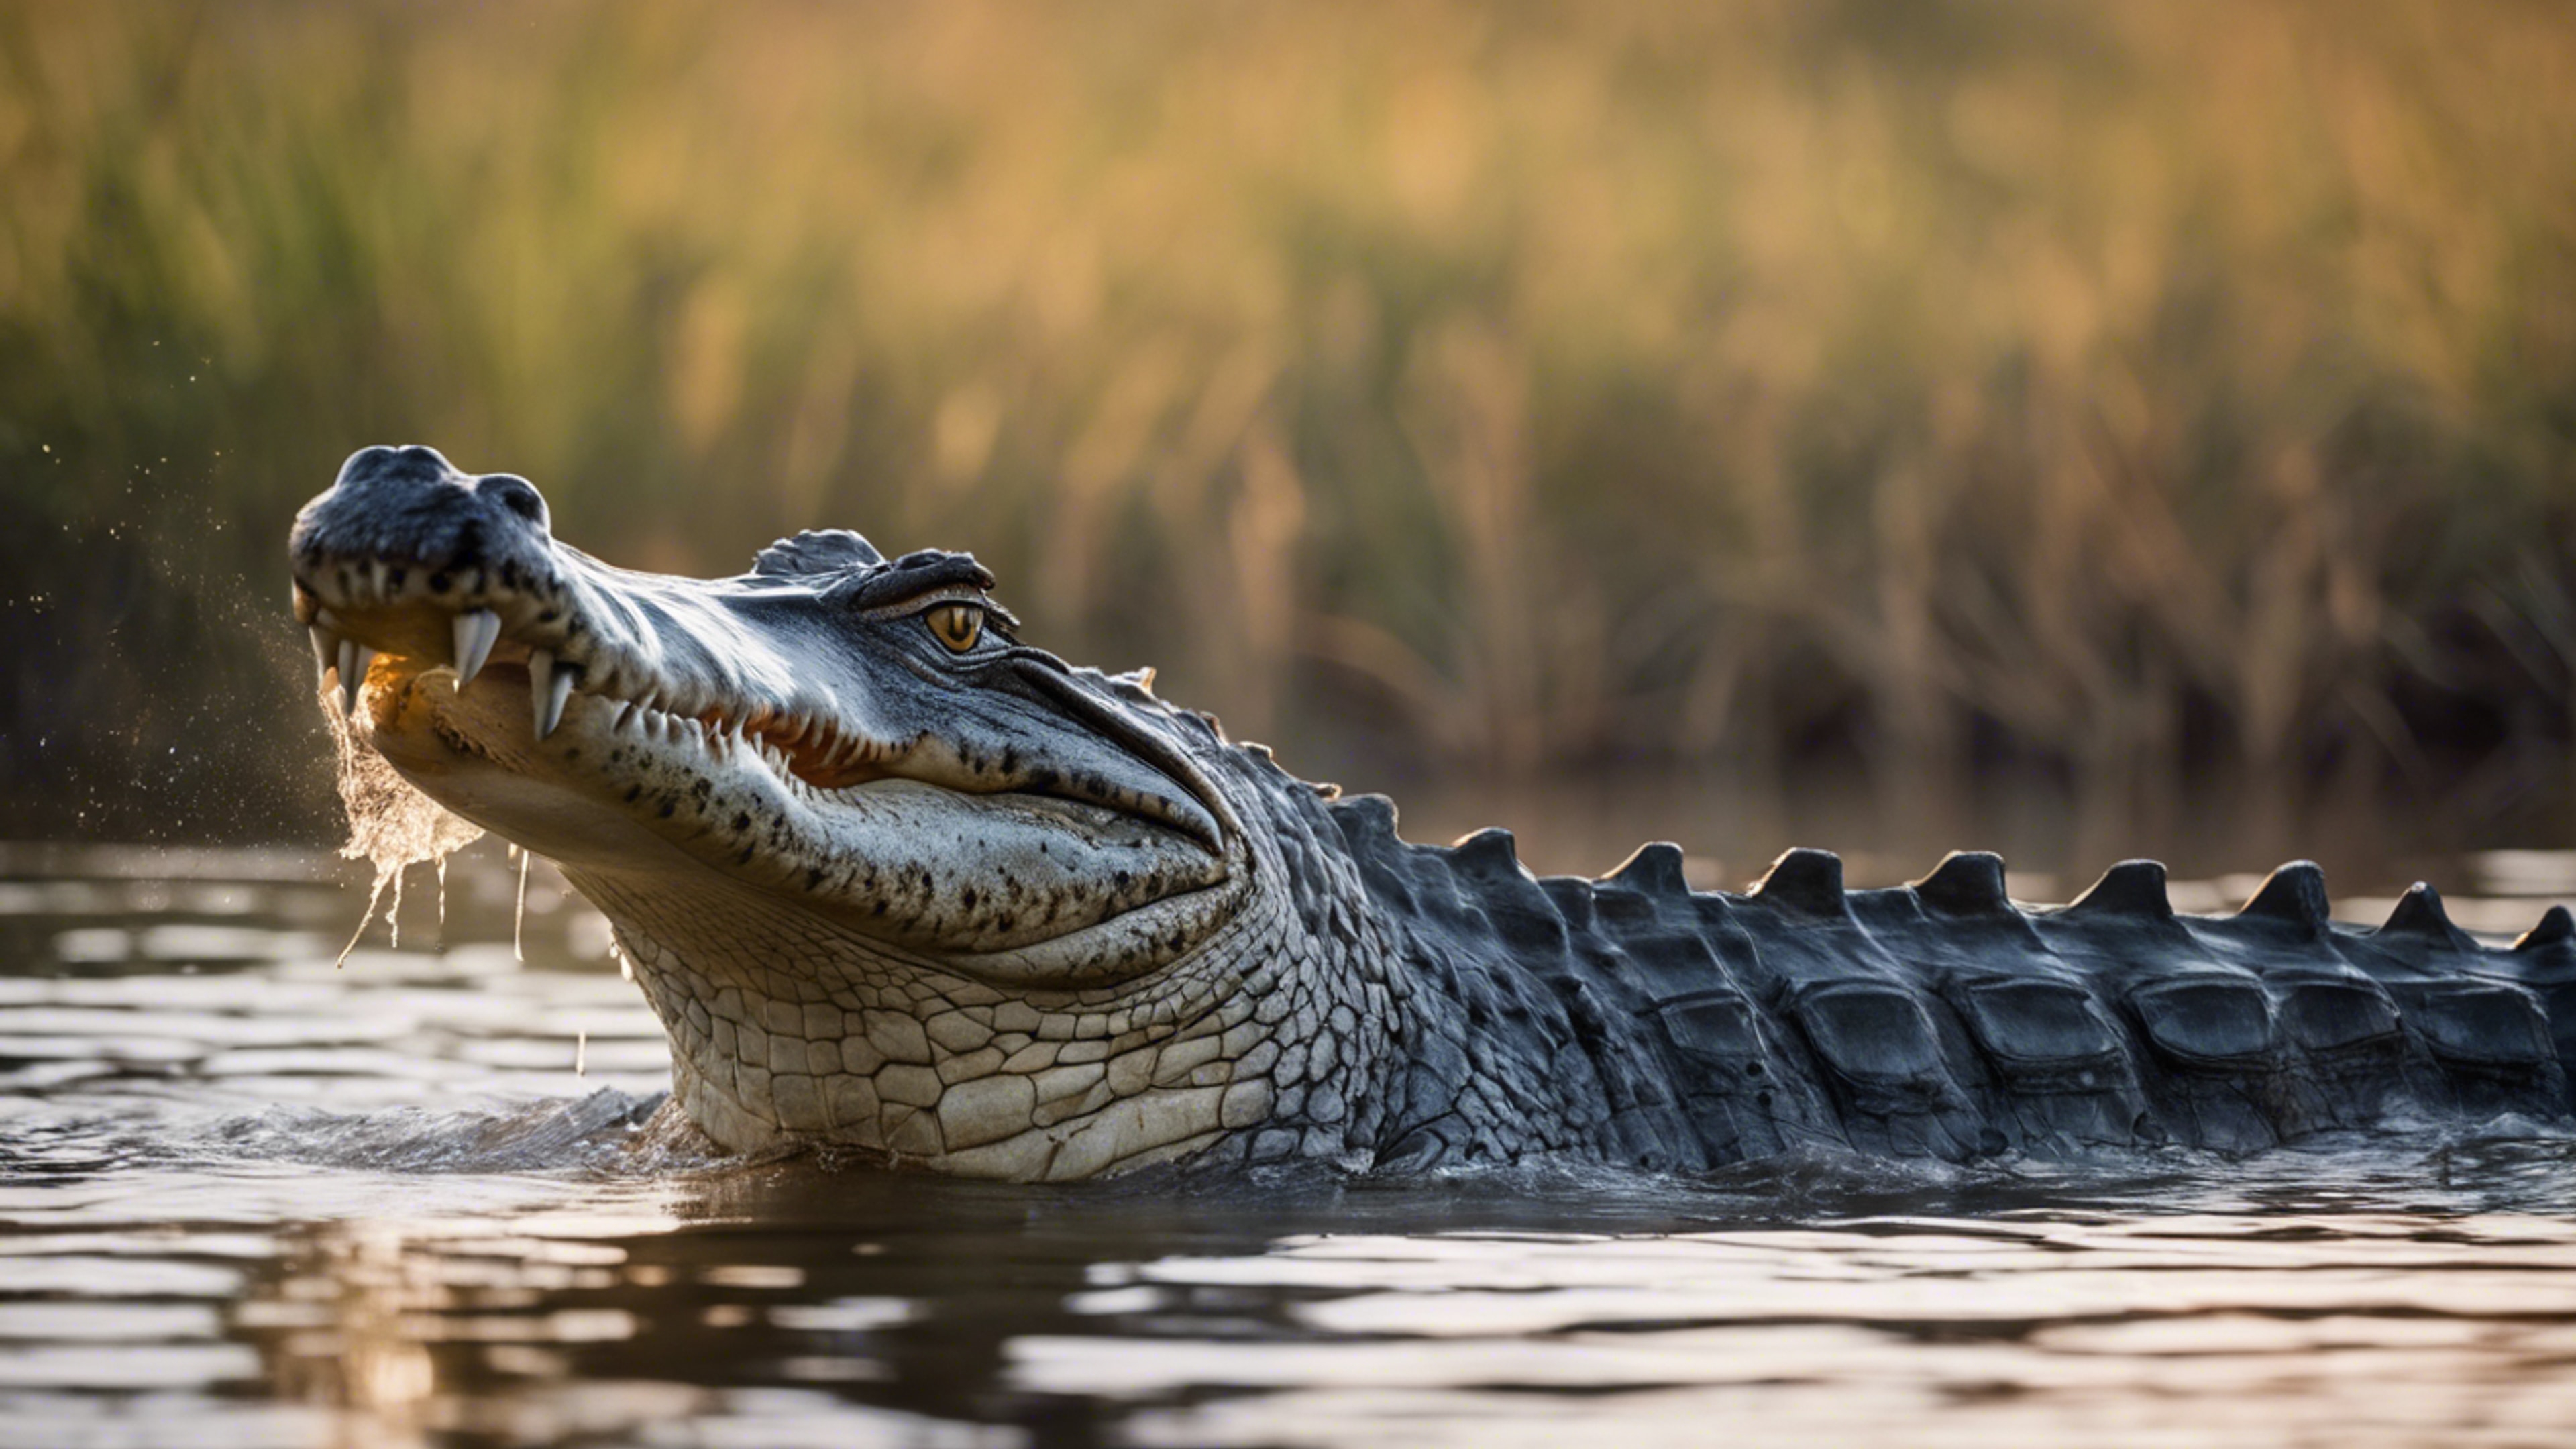 A glorious scene of a crocodile in the heart of the Okavango Delta. Divar kağızı[926204686e5b483ca4a6]